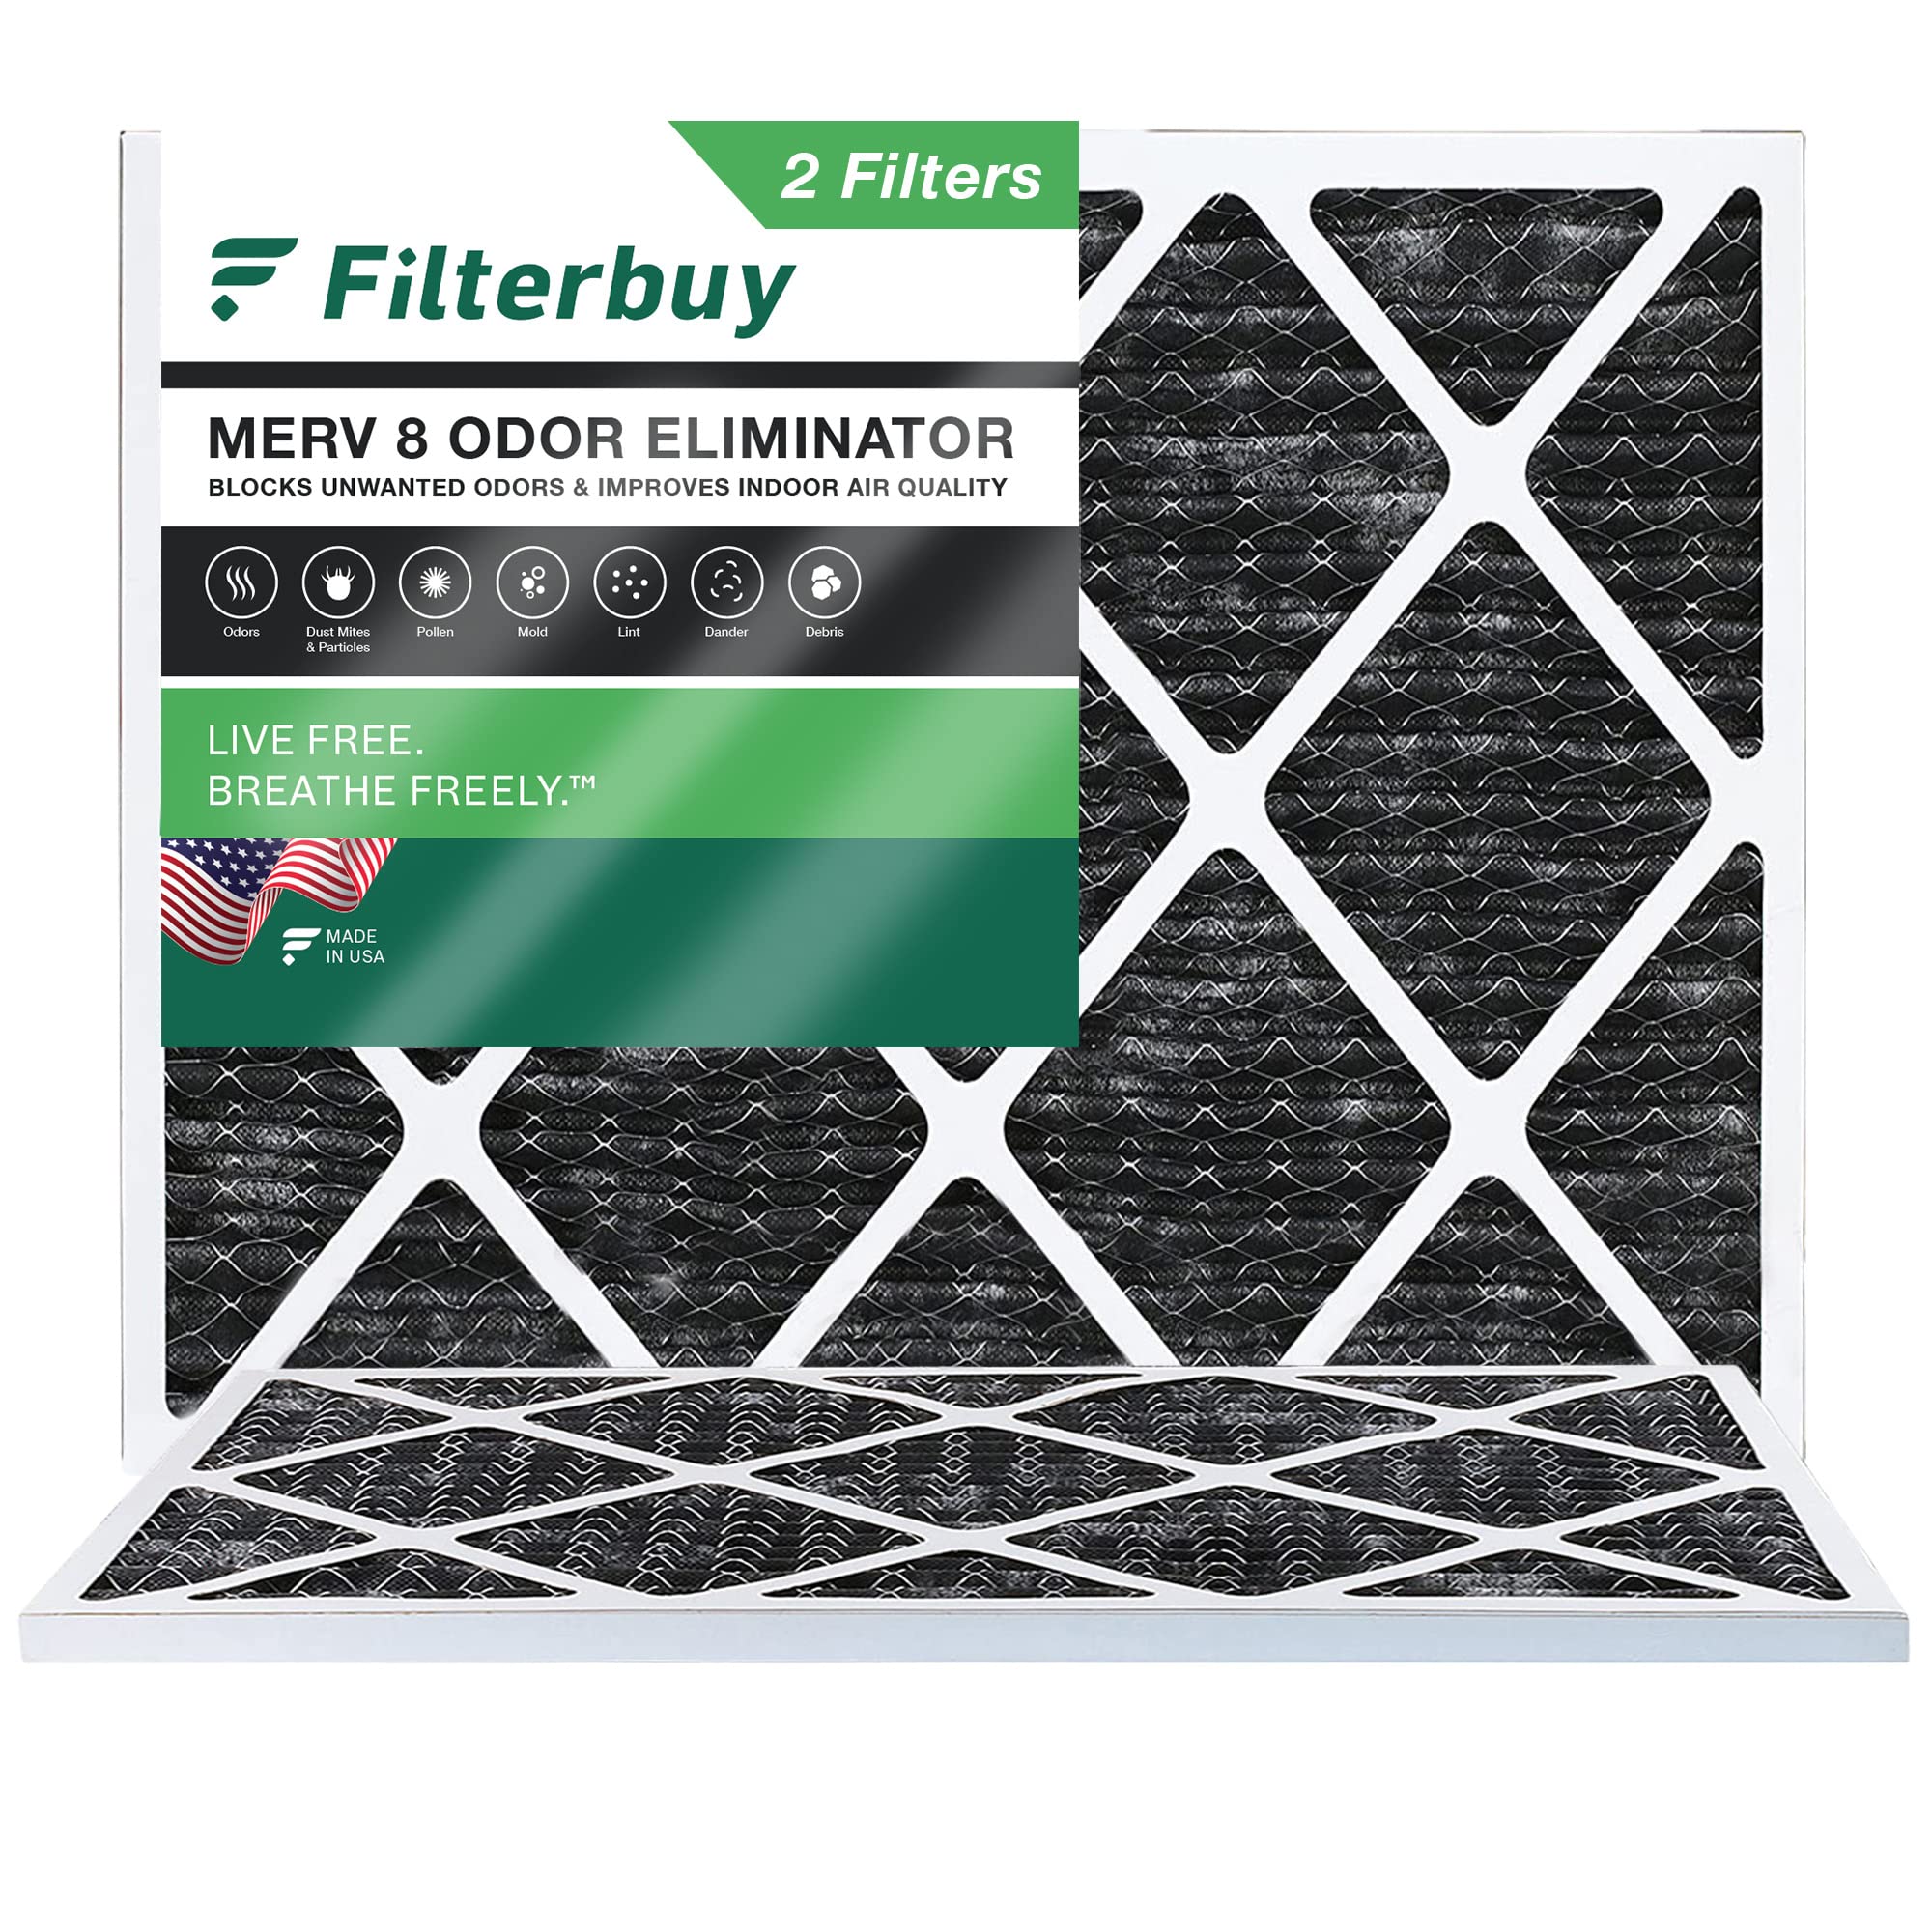 FilterBuy Allergen-Geruchskiller 18x24x1 MERV 8 Plissee AC Ofen-Luftfilter mit Aktivkohle – 2 Stück – 18x24x1